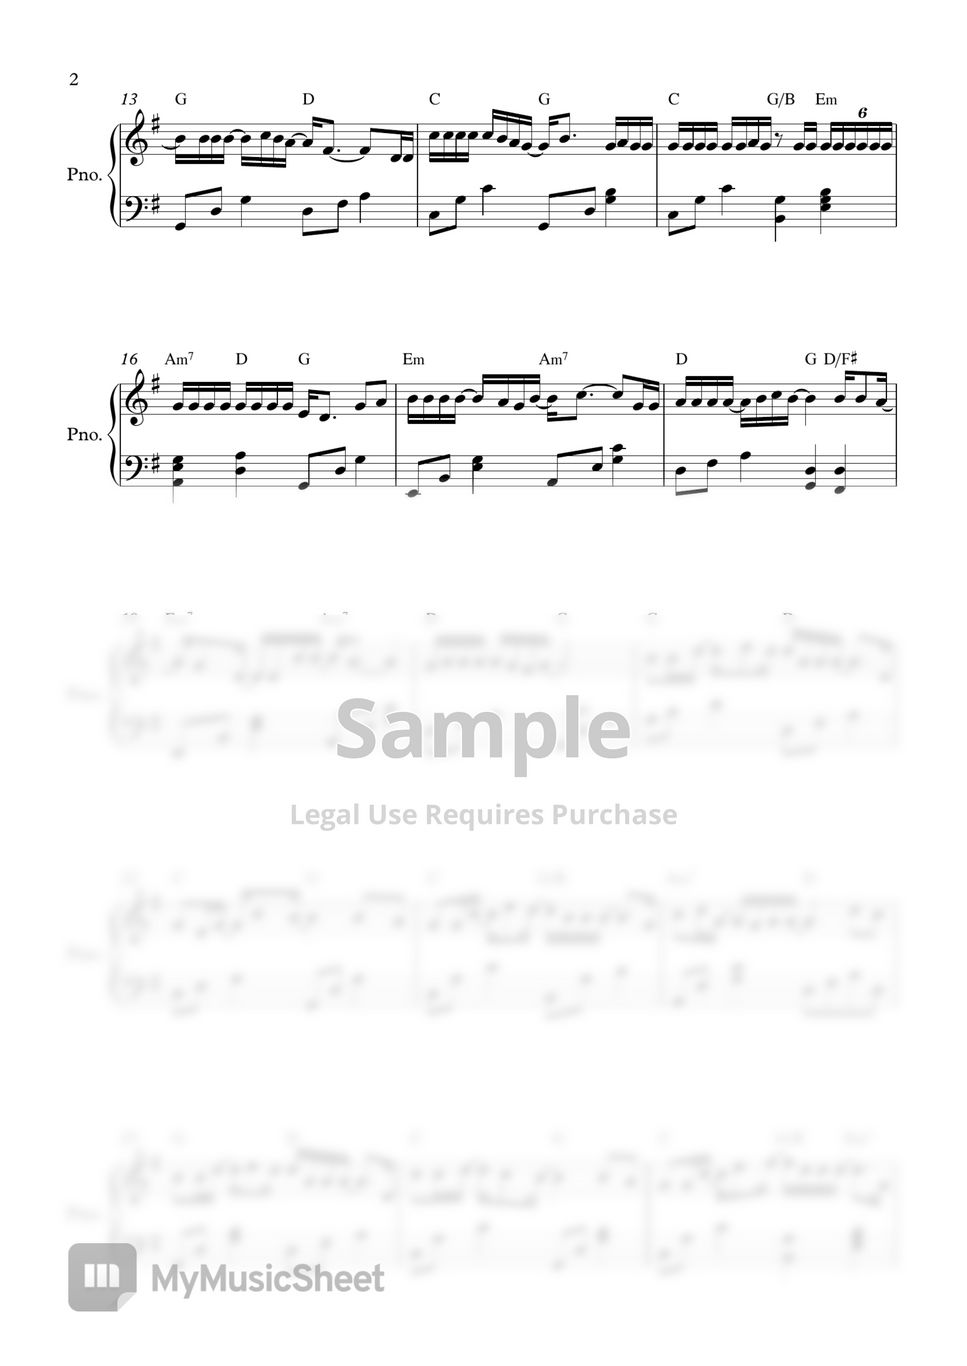 보라미유(BRMY), MJ(써니사이드) - 통화연결음(Ring Back tone) (easy ver.) by PIANOiNU